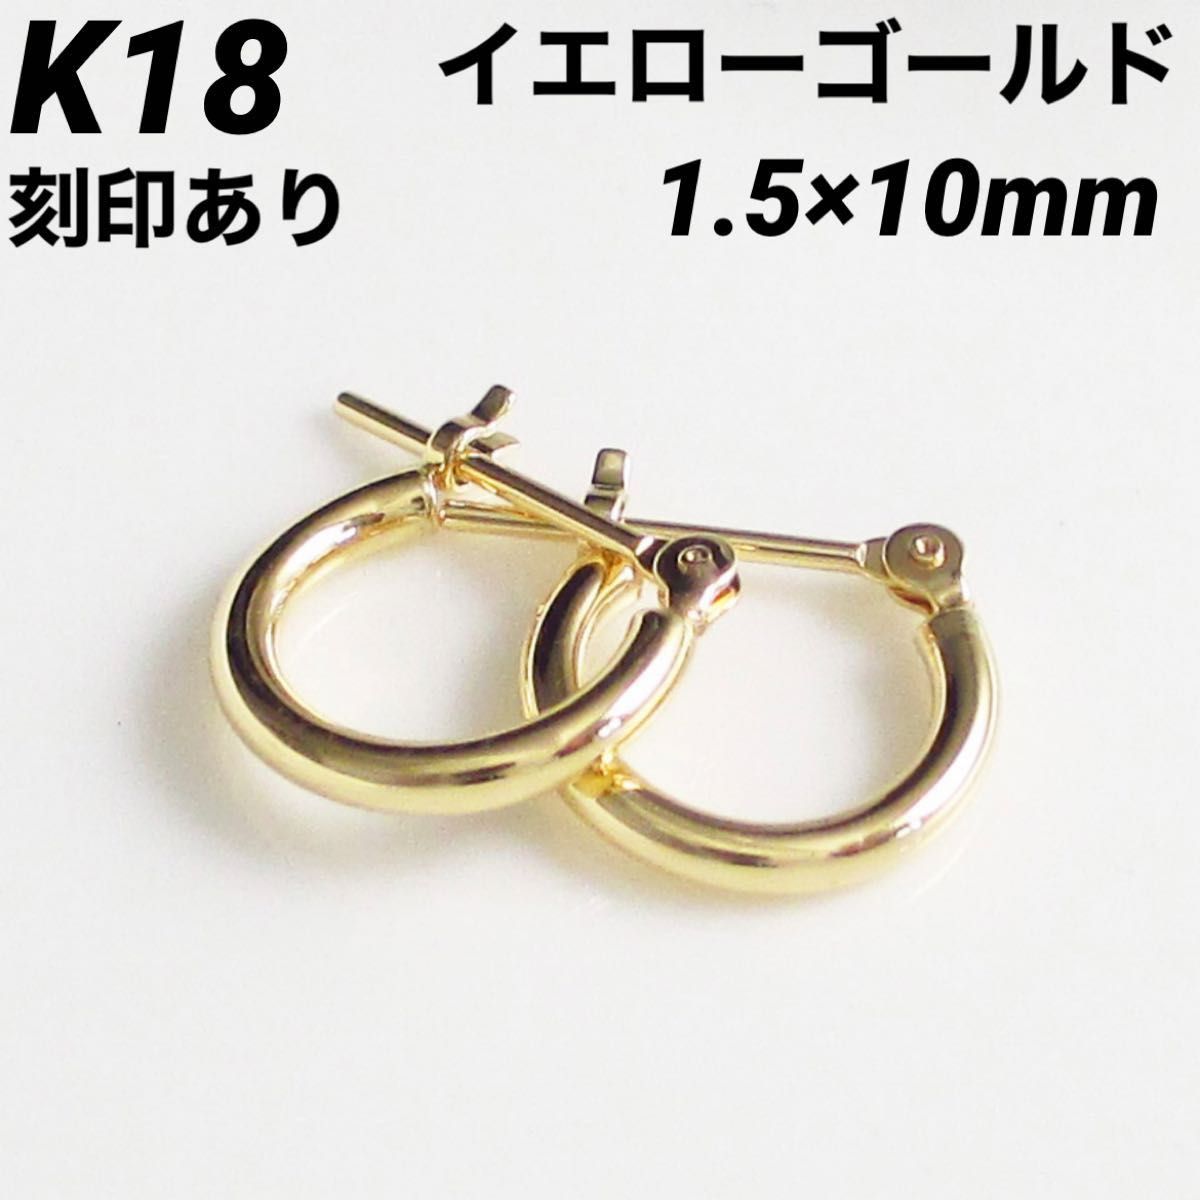 K18 イエローゴールド フープ 1.5×10㎜ 上質 日本製 18金ピアス・本物 刻印入り ペア